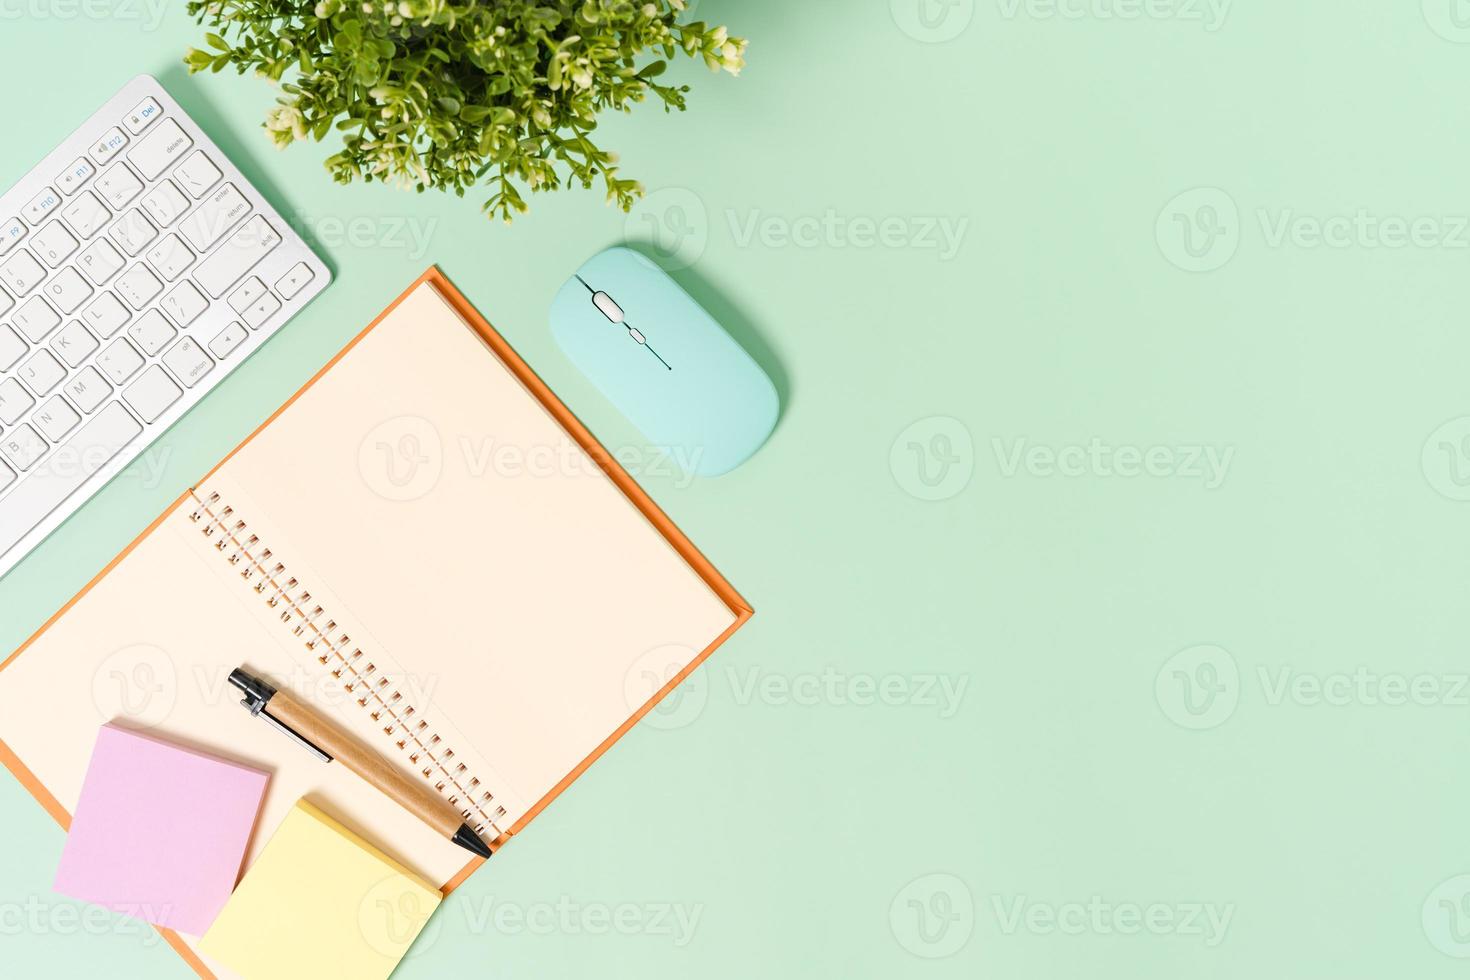 creatieve platliggende foto van een werkruimtebureau. bovenaanzicht bureau met toetsenbord, muis en open mockup zwarte notebook op pastel groene kleur achtergrond. bovenaanzicht mock-up met kopieerruimtefotografie.